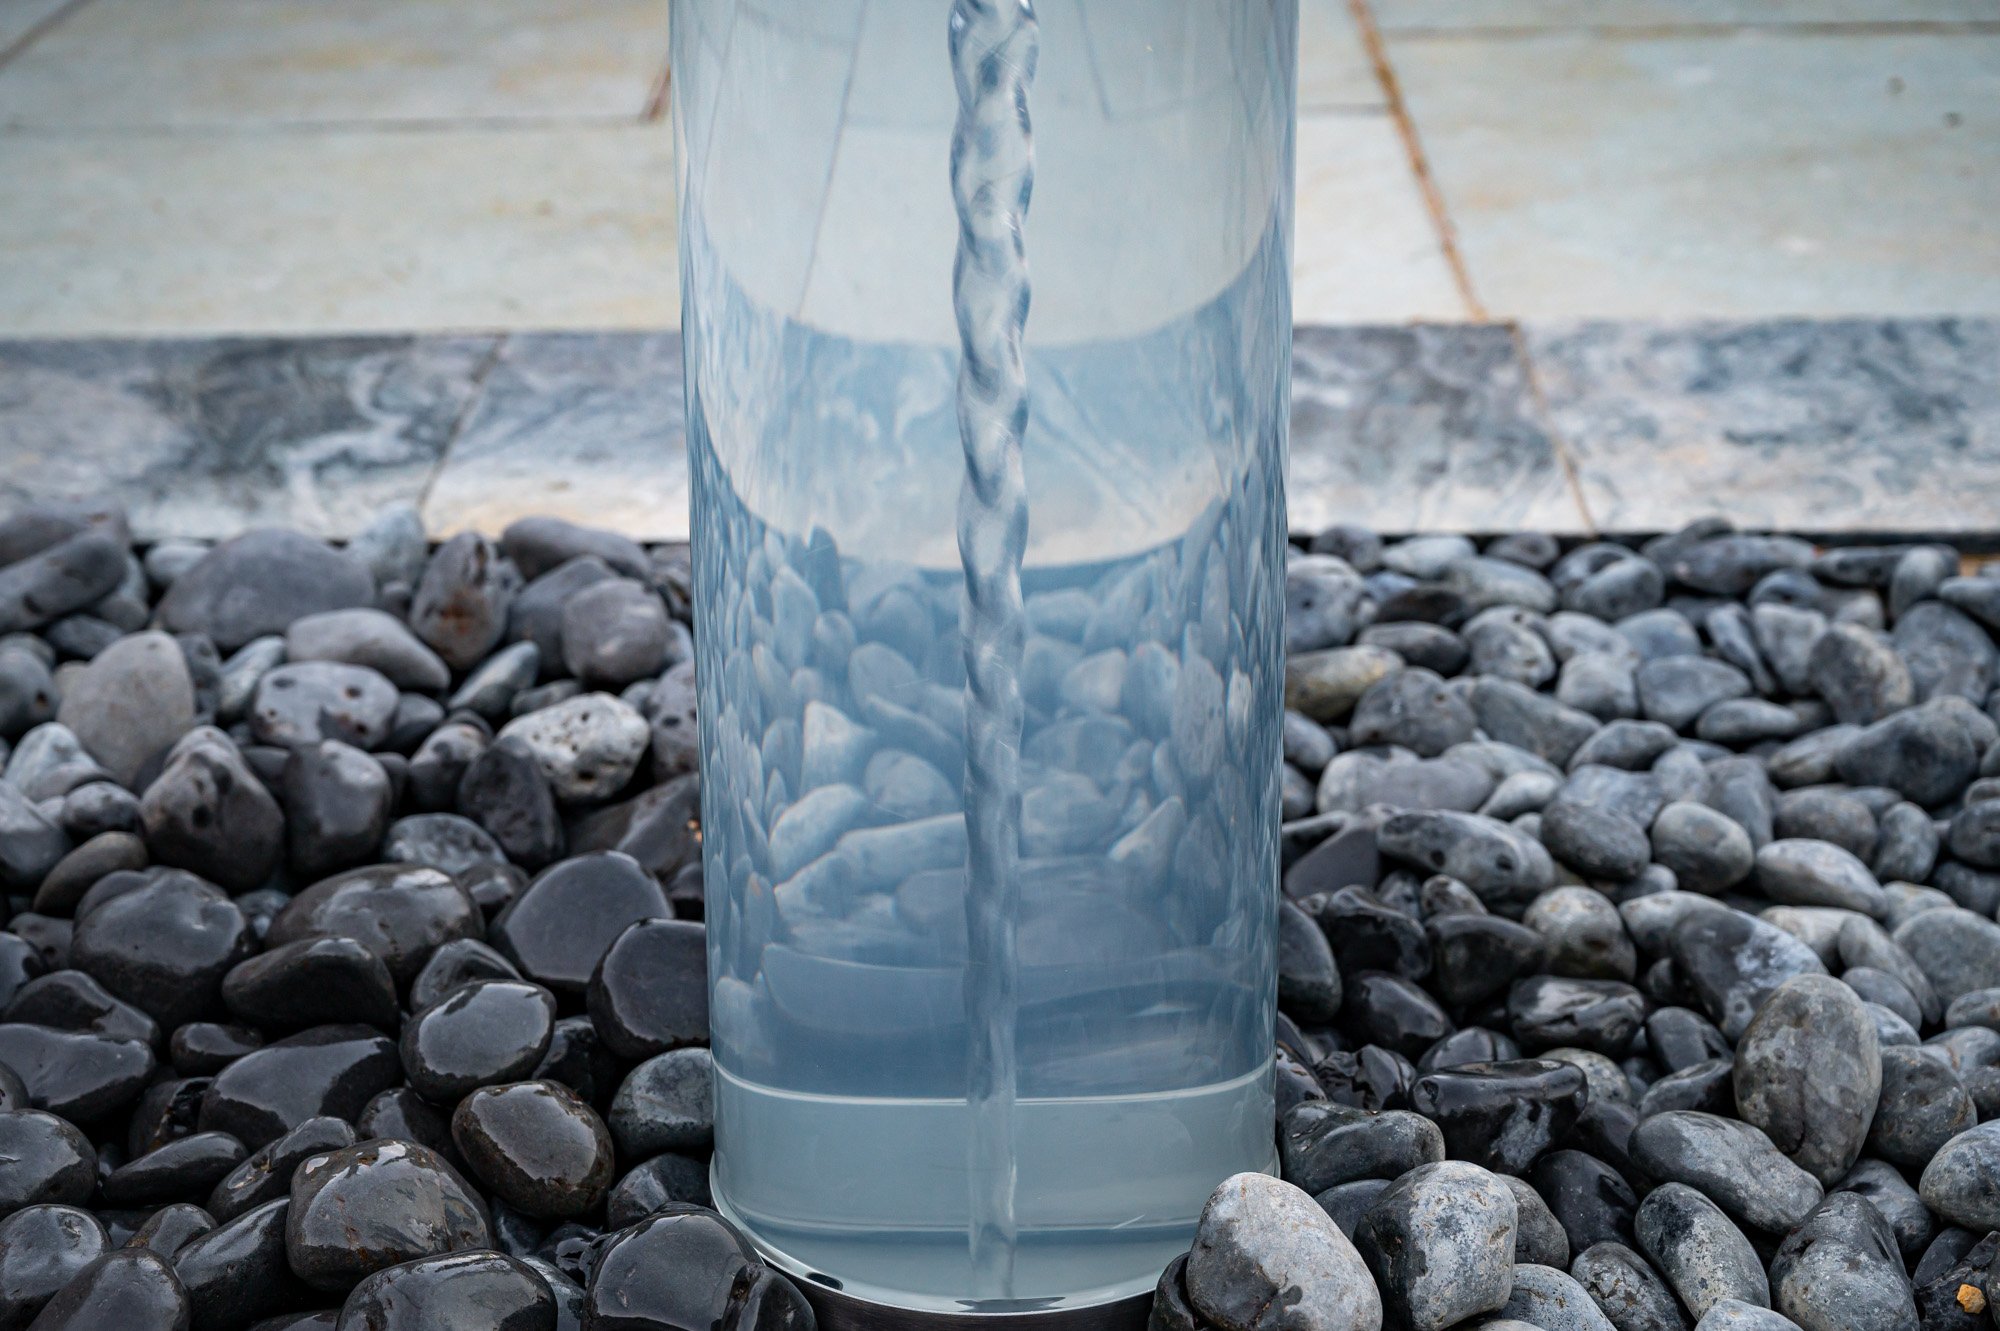 Aqueum Vortex Water Feature Kit